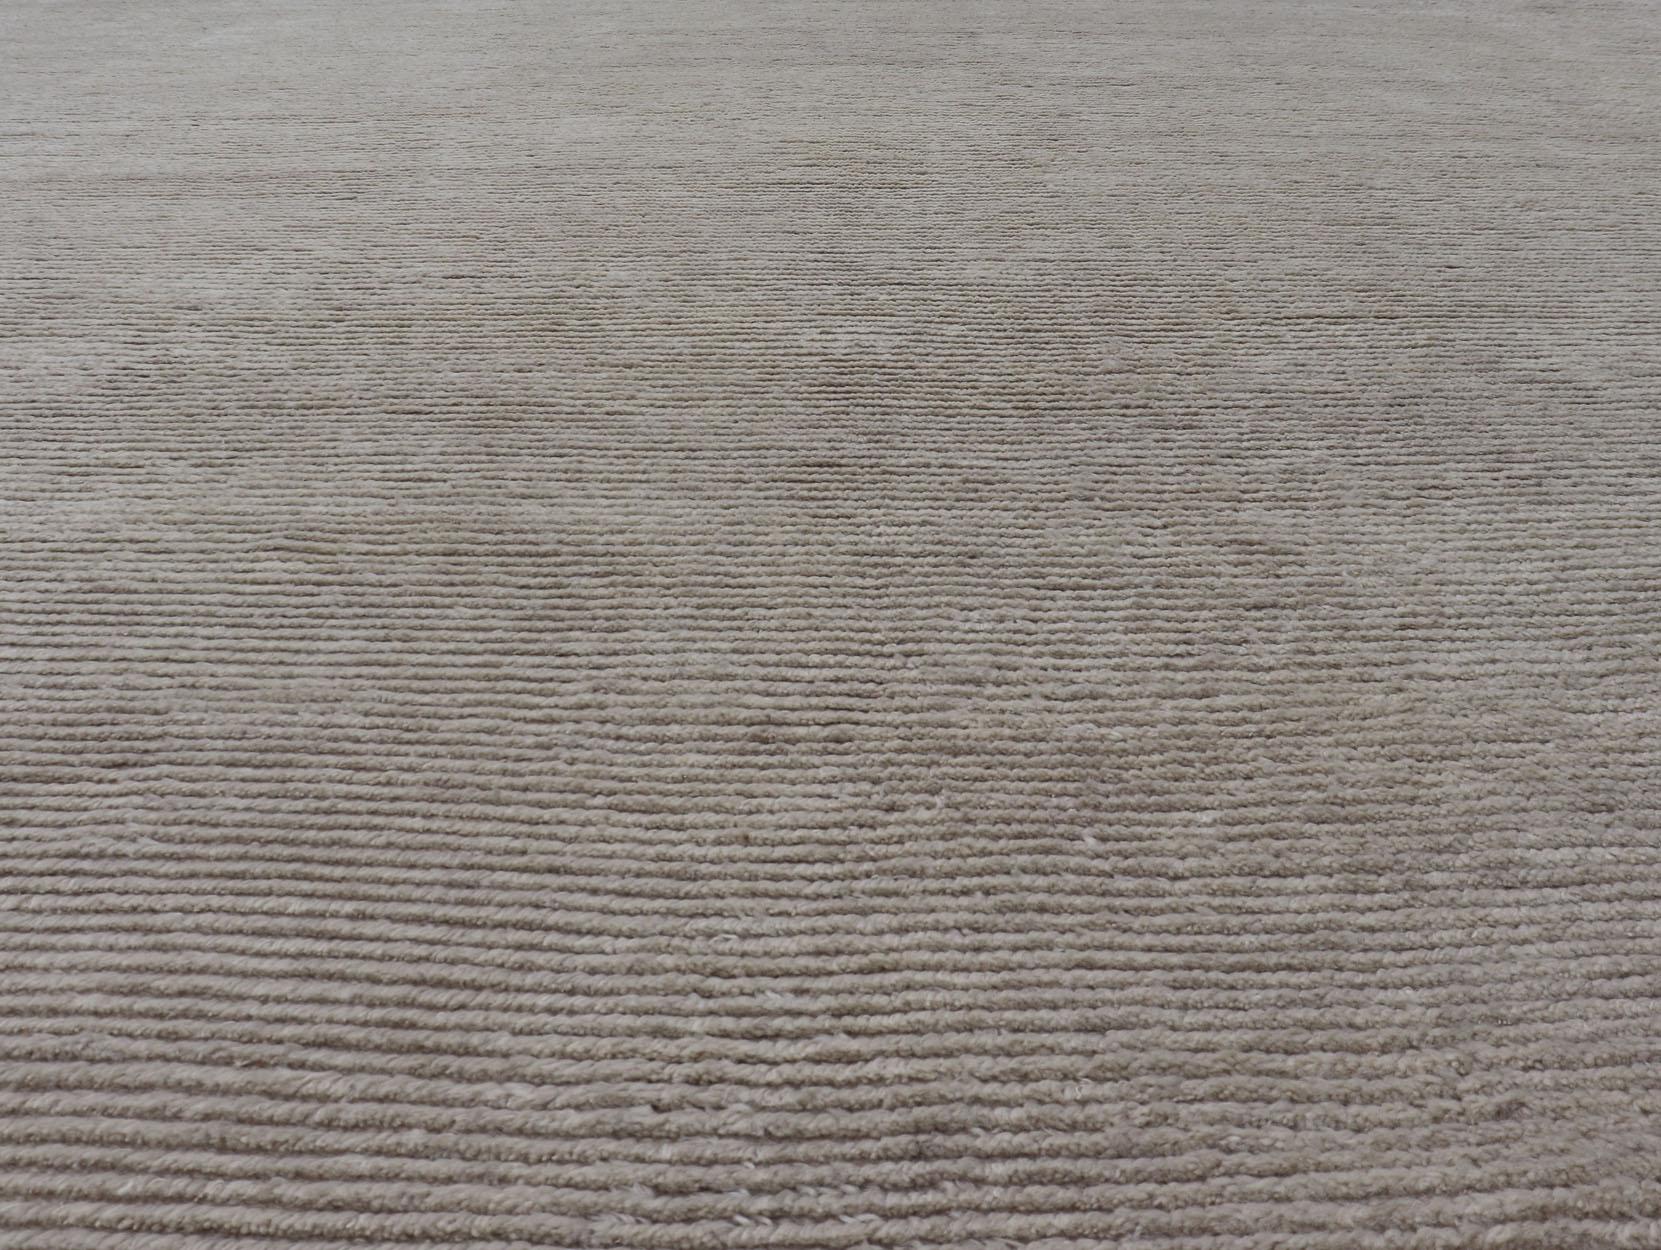 Grand tapis carré moderne dans un style minimaliste  design en blanc cassé et beige. Pays d'origine : Inde ; Keivan Woven Arts/ Tapis/ KHN-34904 Type : Moderne, Minimal ; Design : Abstrait, Minimaliste

Mesures 14'7 x 15'9

Ce tapis moderne de